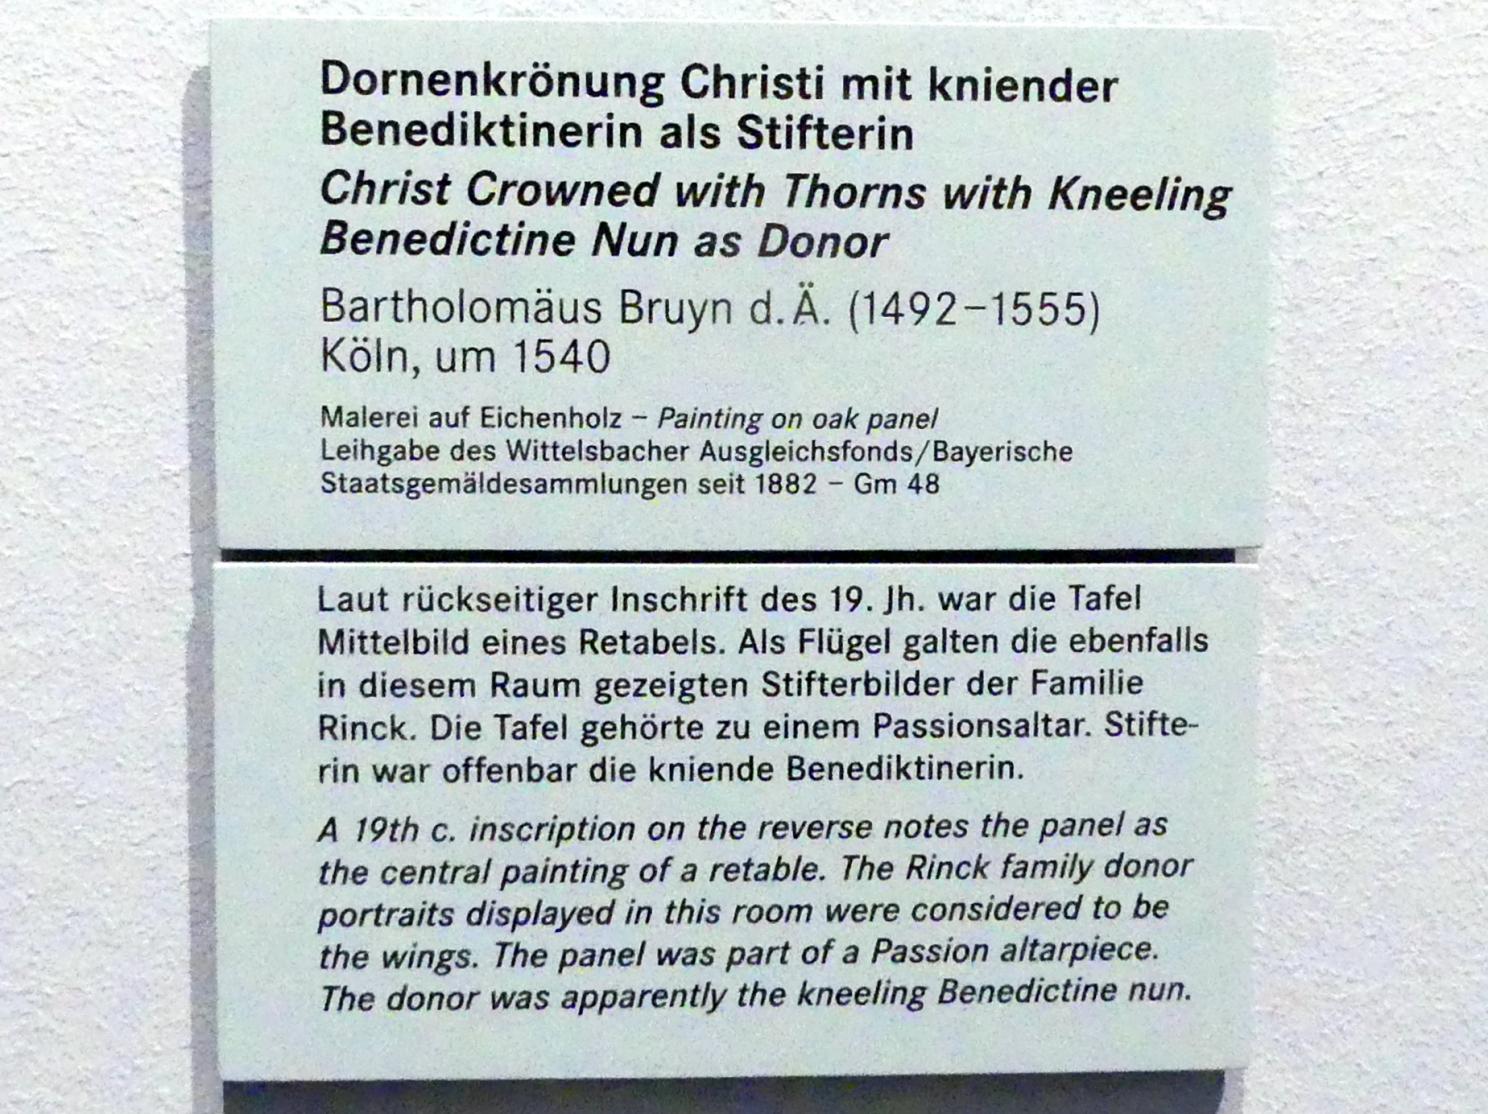 Bartholomäus Bruyn der Ältere (1513–1546), Dornenkrönung Christi mit kniender Benediktinerin als Stifterin, Nürnberg, Germanisches Nationalmuseum, Saal 106, um 1540, Bild 2/2